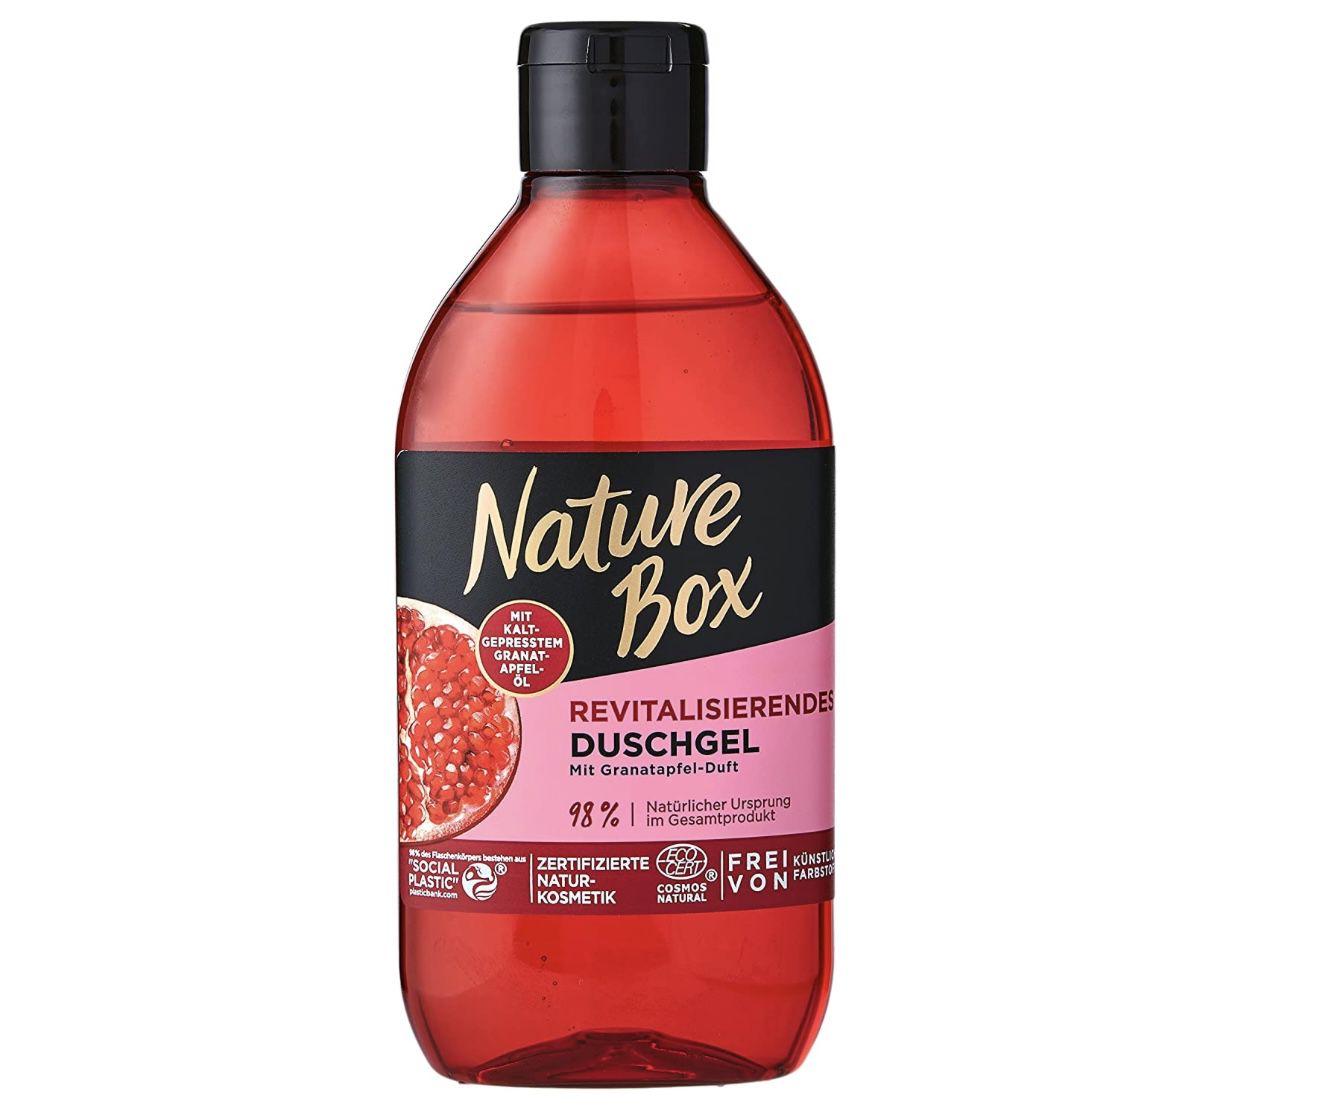 Nature Box Revitalisierendes Duschgel mit Granatapfel Duft für 0,80€ (statt 2€)   Prime